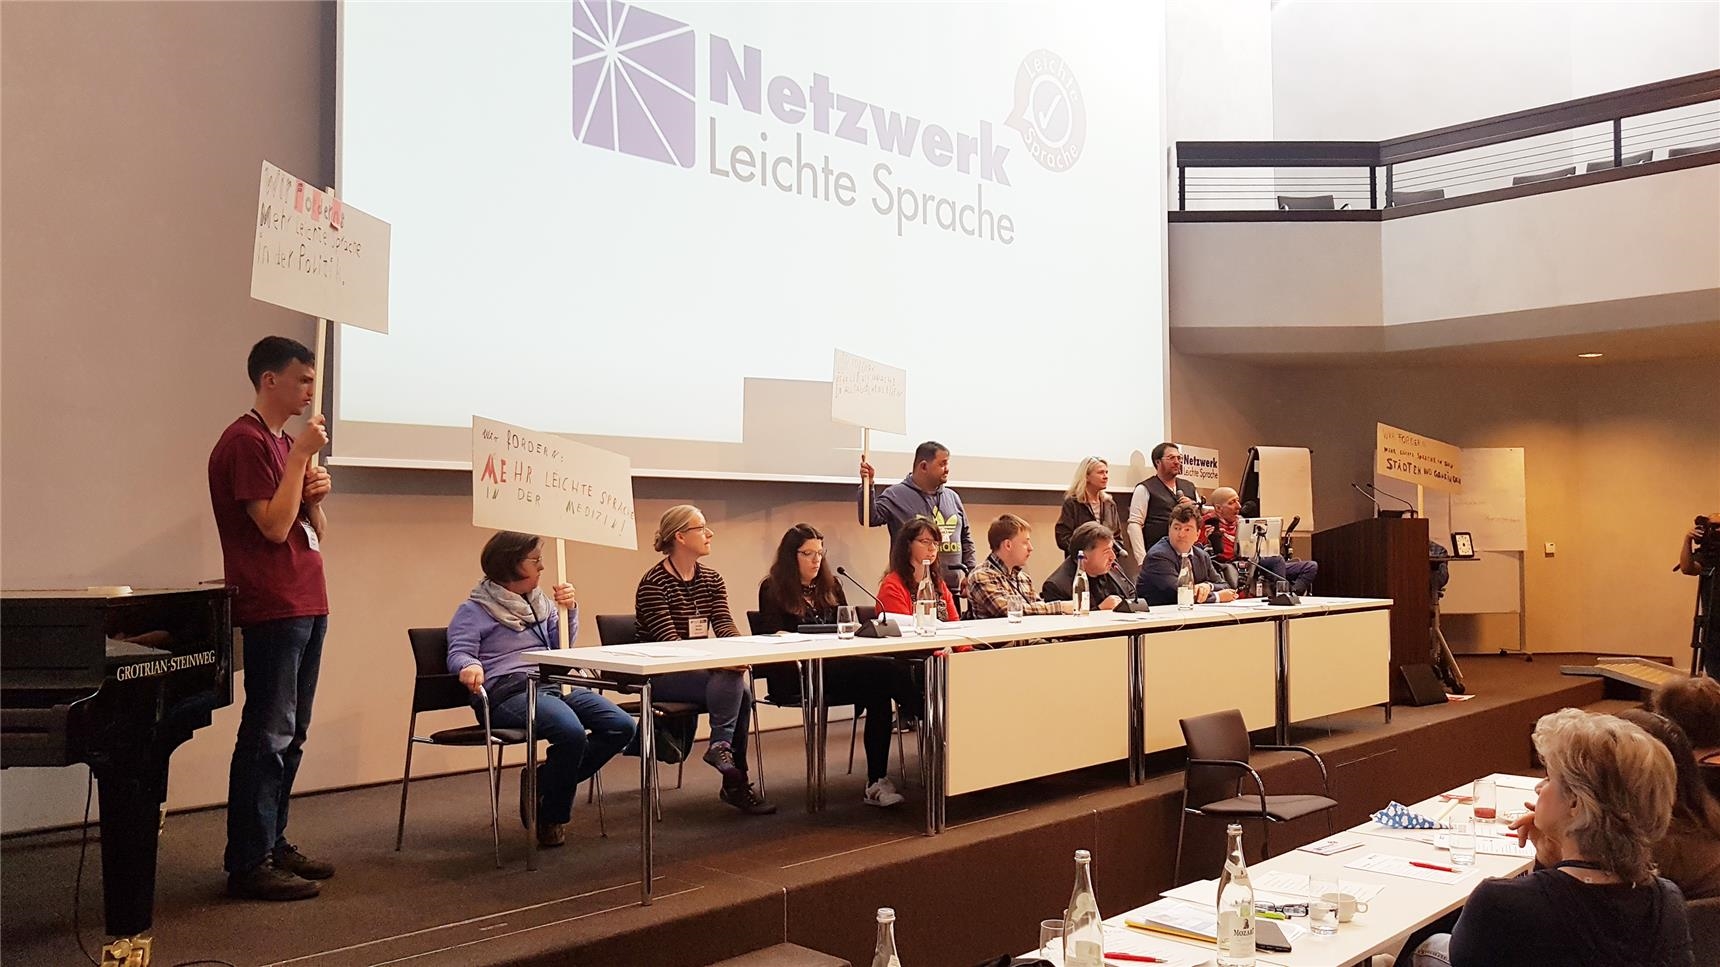 Netzwerk Leichte Sprache Treffen in Augsburg - 1 (Bernhard Gattner)